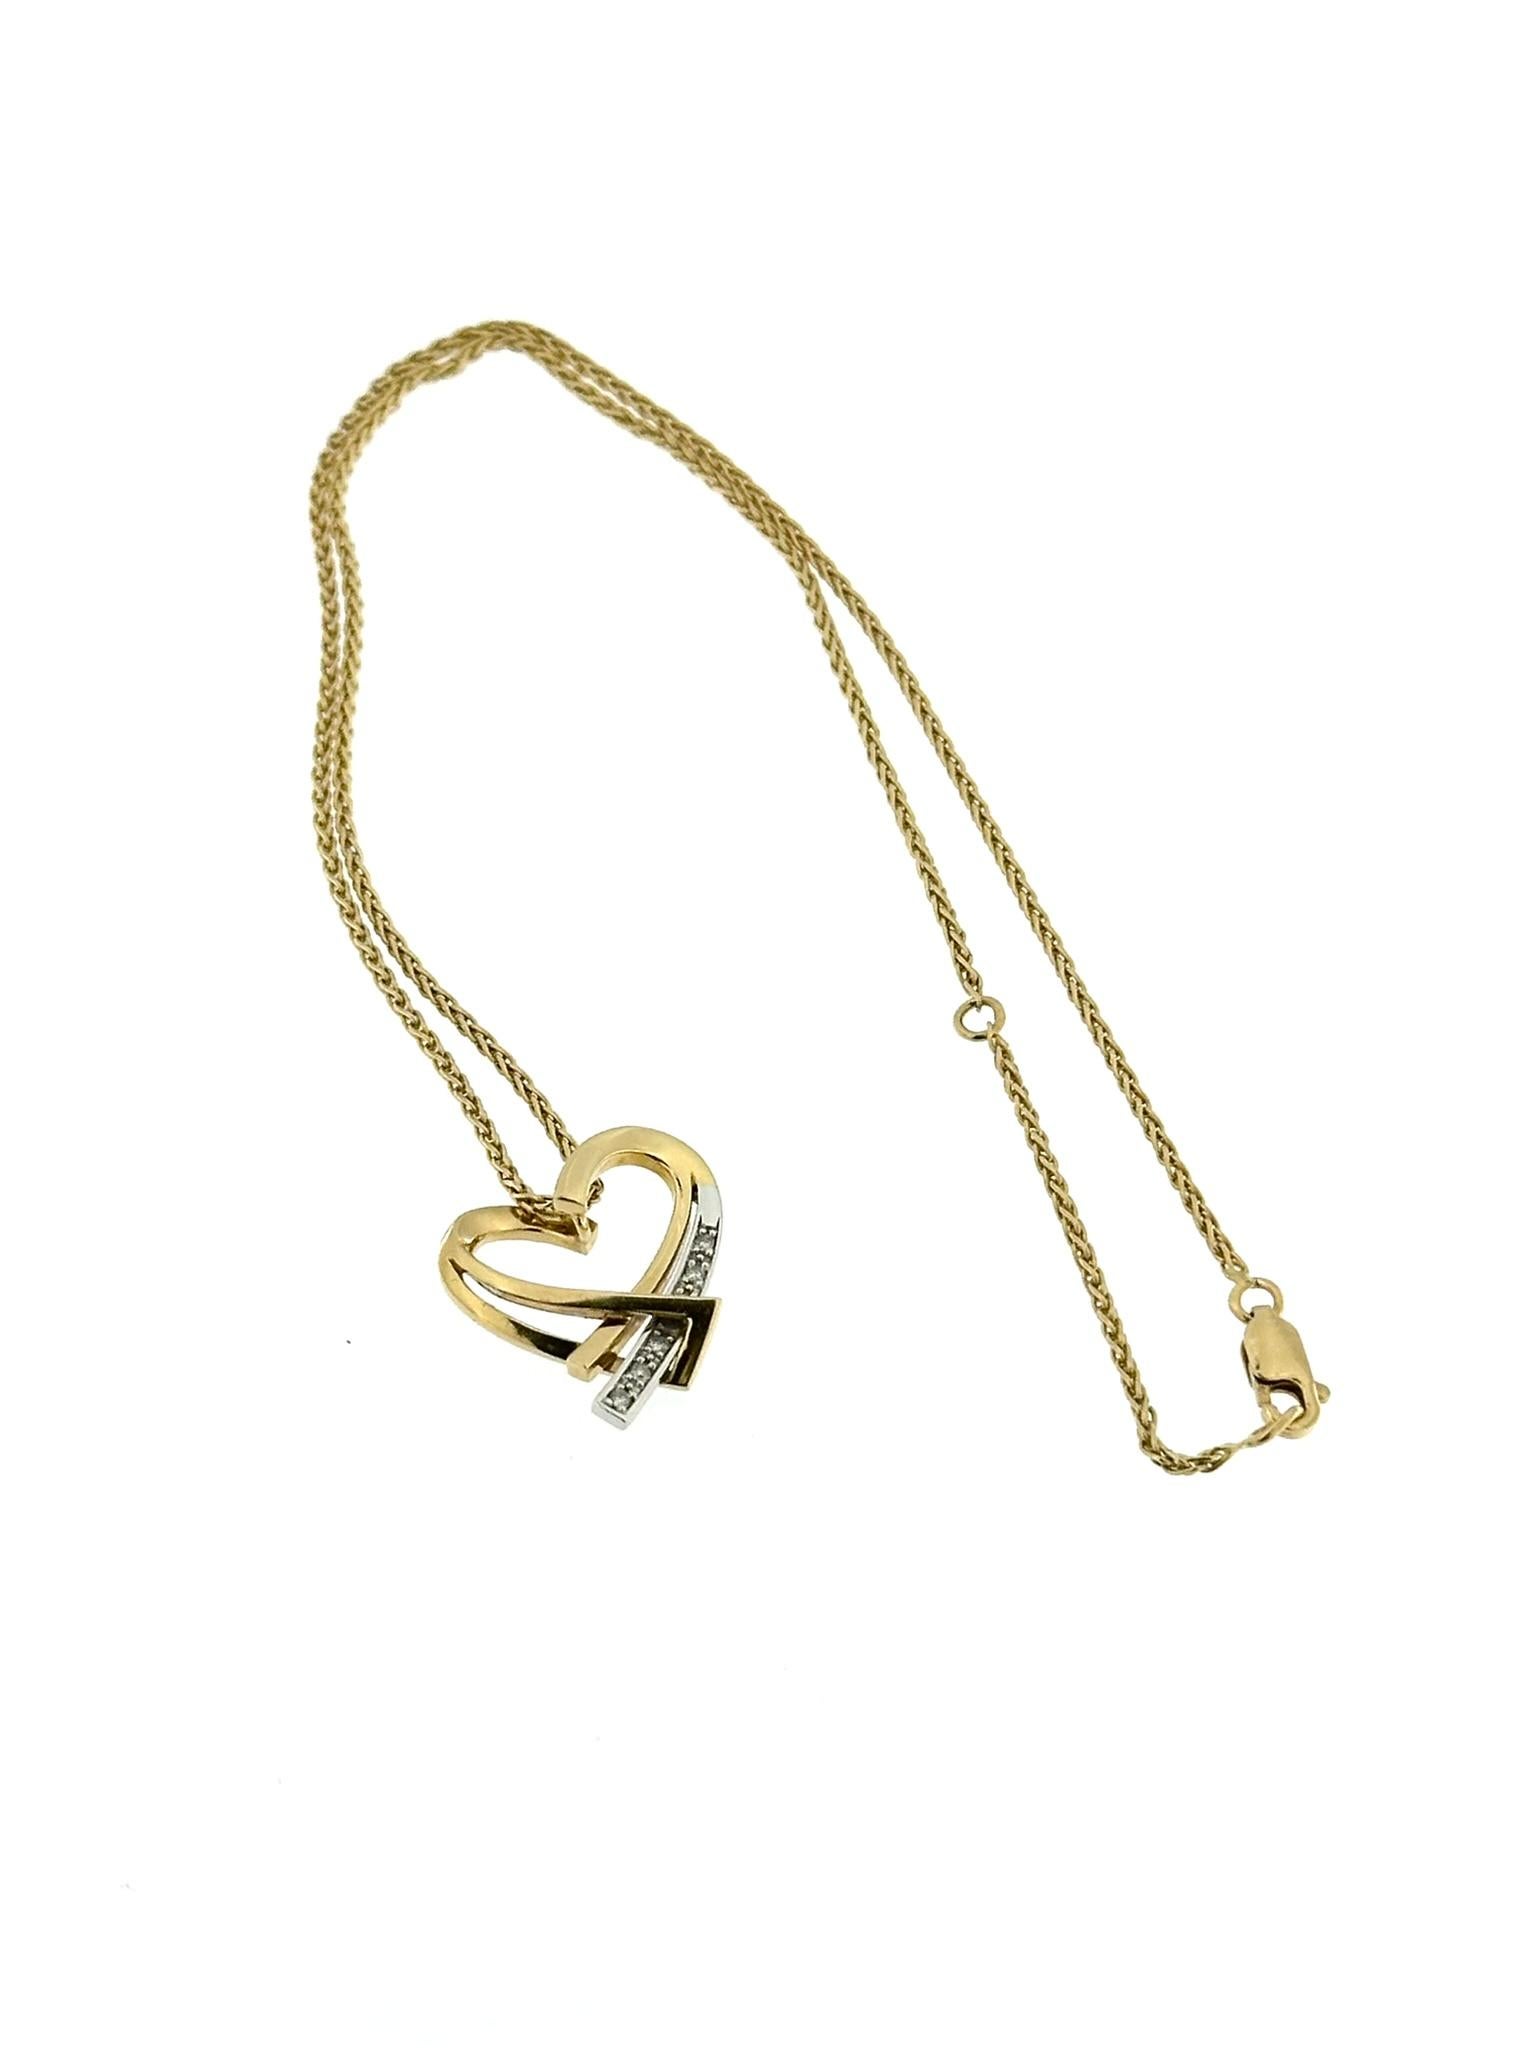 Le pendentif cœur avec chaîne de Guy Laroche est un bijou étonnant conçu pour capter l'attention et susciter des émotions. Fabriqué en or jaune et blanc 18kt, ce pendentif incarne l'élégance et la sophistication.

Le design en forme de cœur